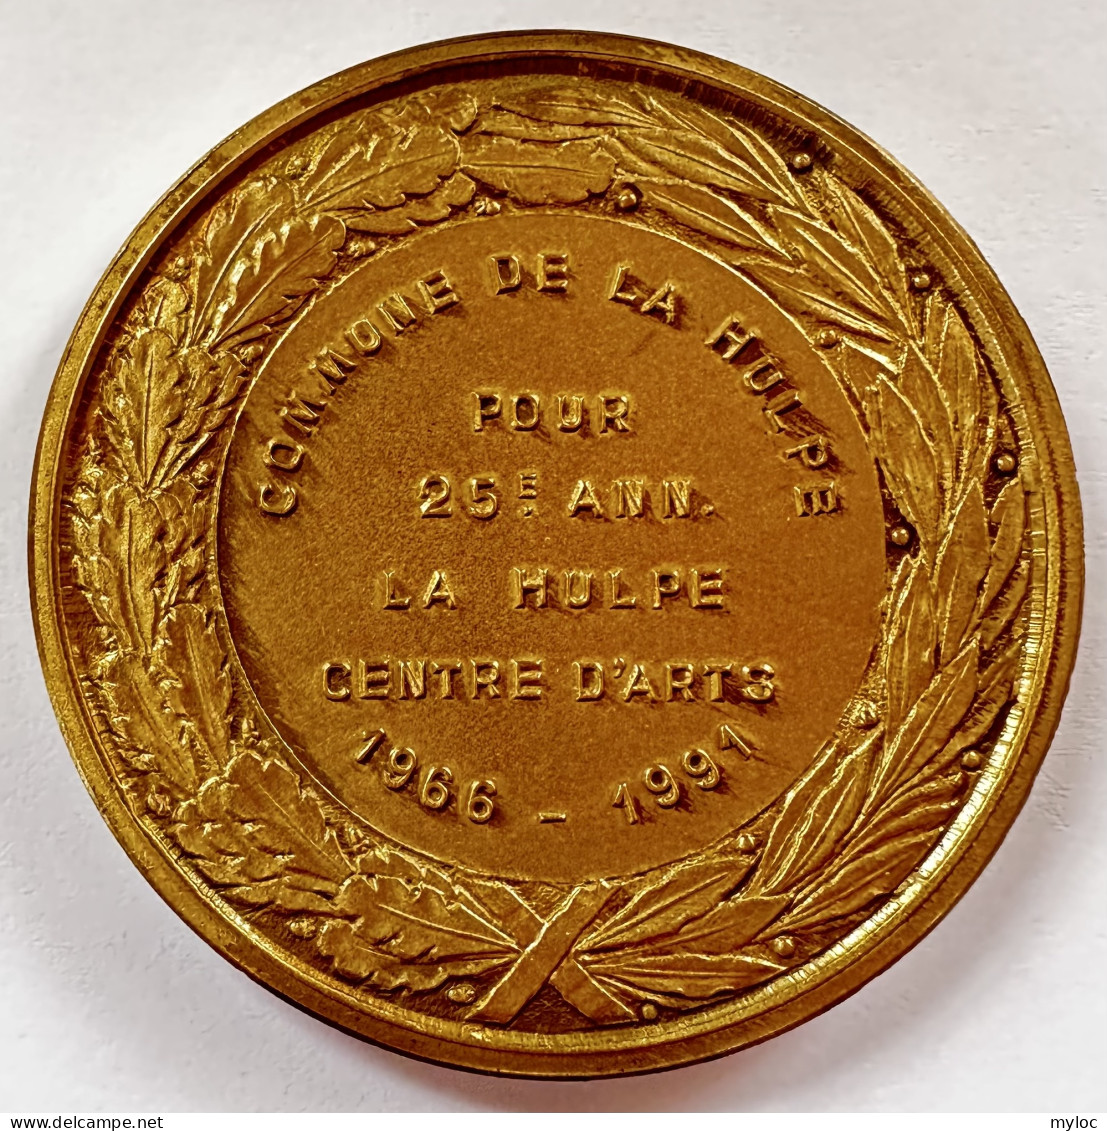 Médaille. Commune De La Hulpe. Pour 25éme Anniversaire. La Hulpe Centre D'Art. 1966-1991.  - Professionnels / De Société